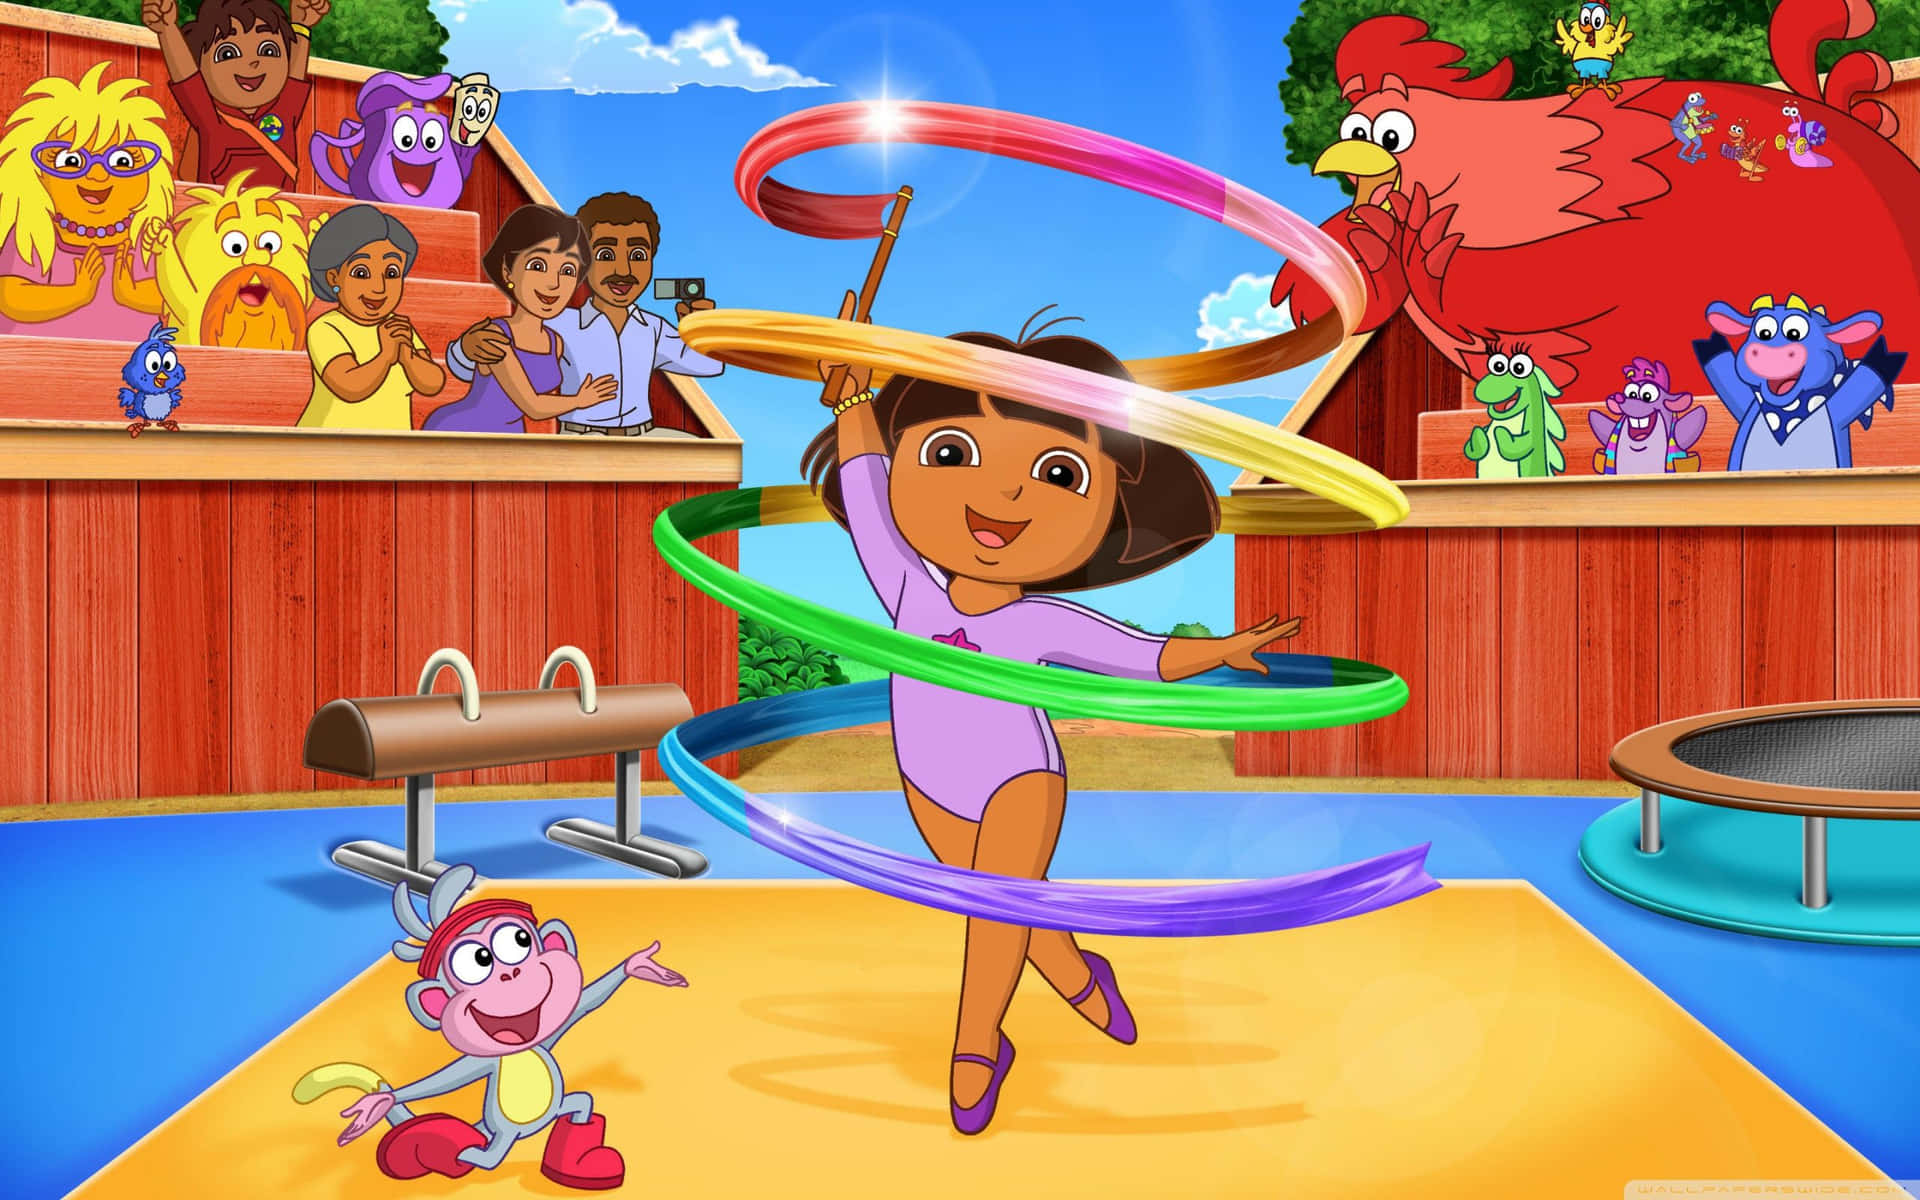 Join Dora on an Adventure!